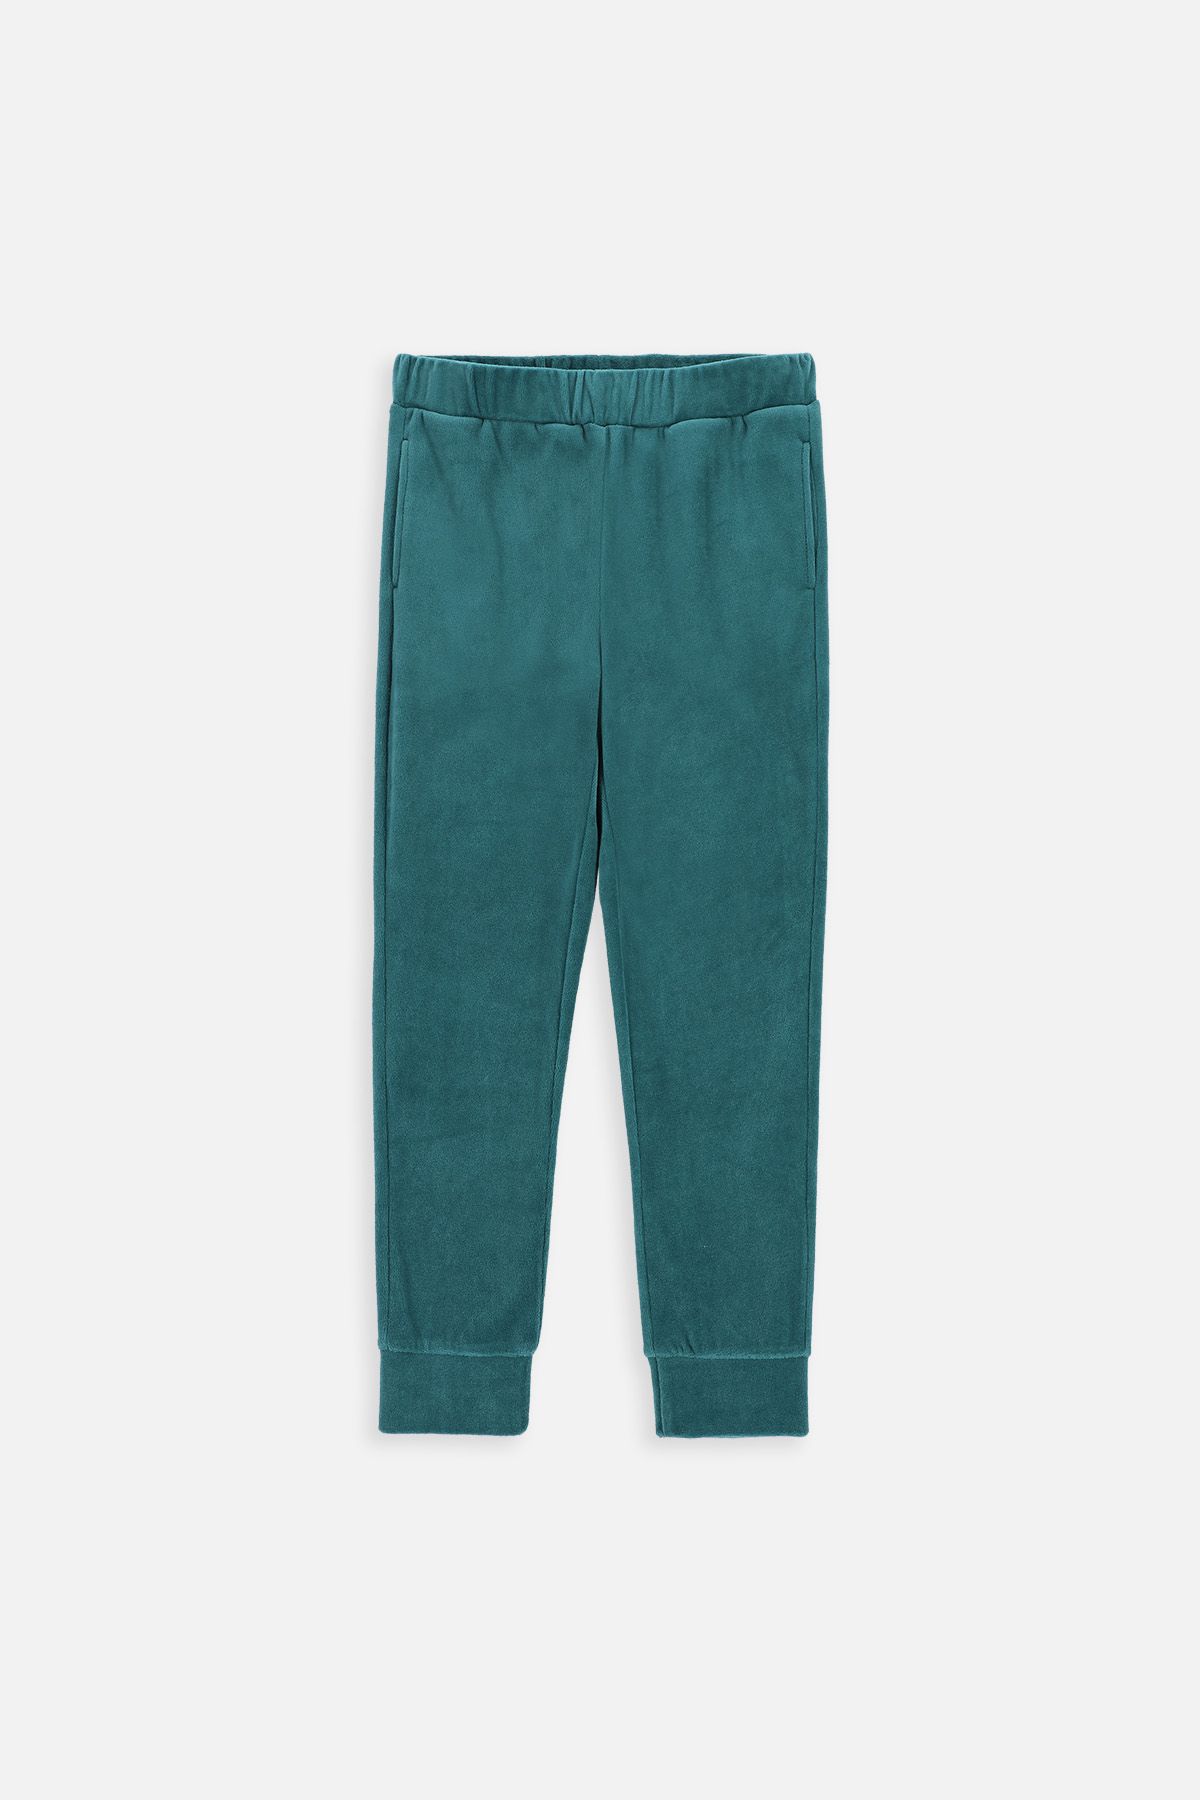 Spodnie dresowe zielone gładkie z kieszeniami 2221056